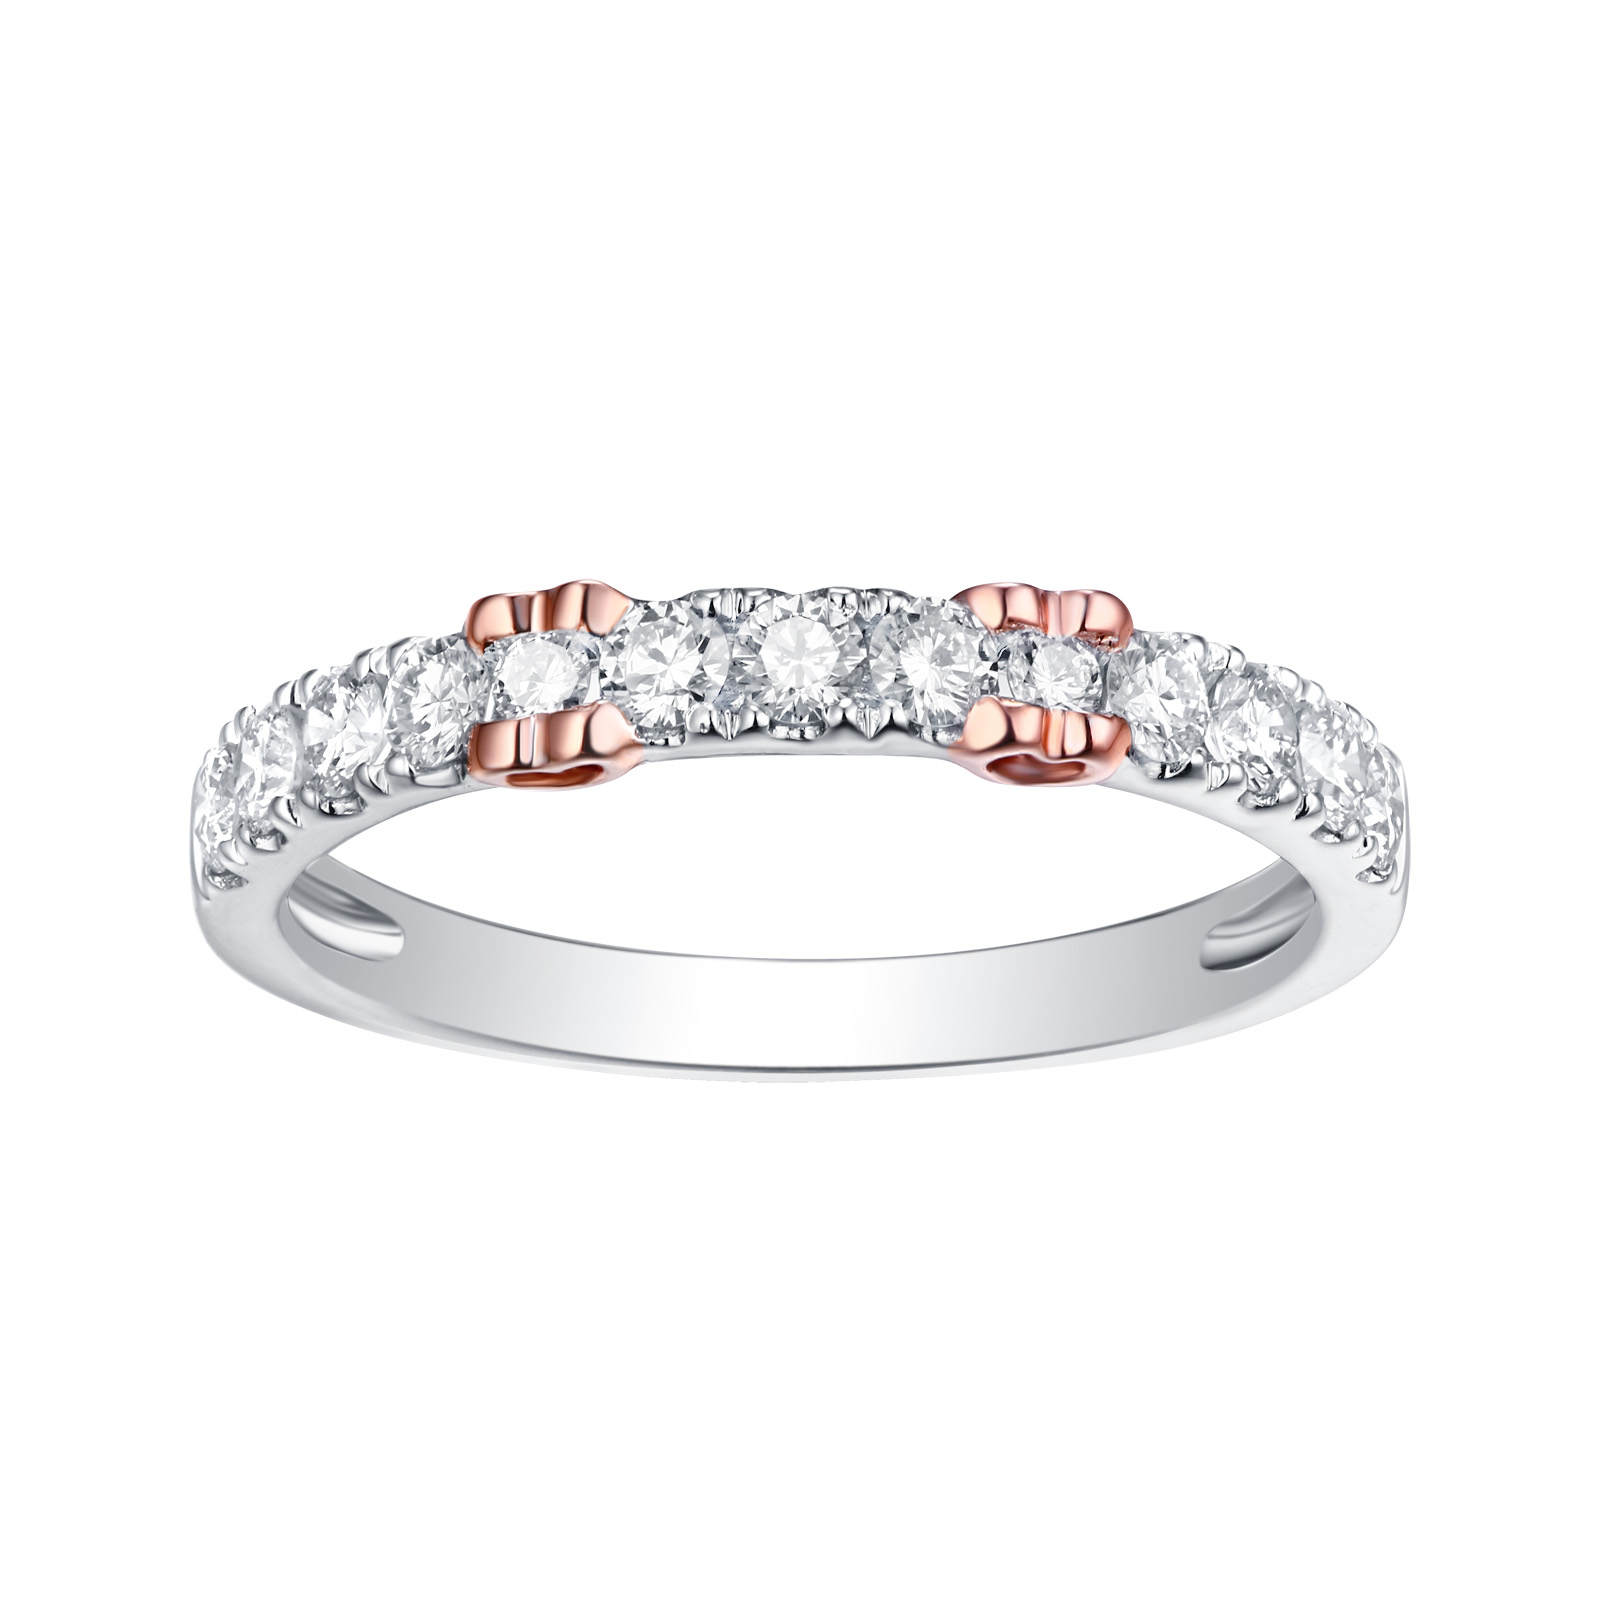 R24526WHT – 14K White Gold Diamond Ring, 0.50 TCW